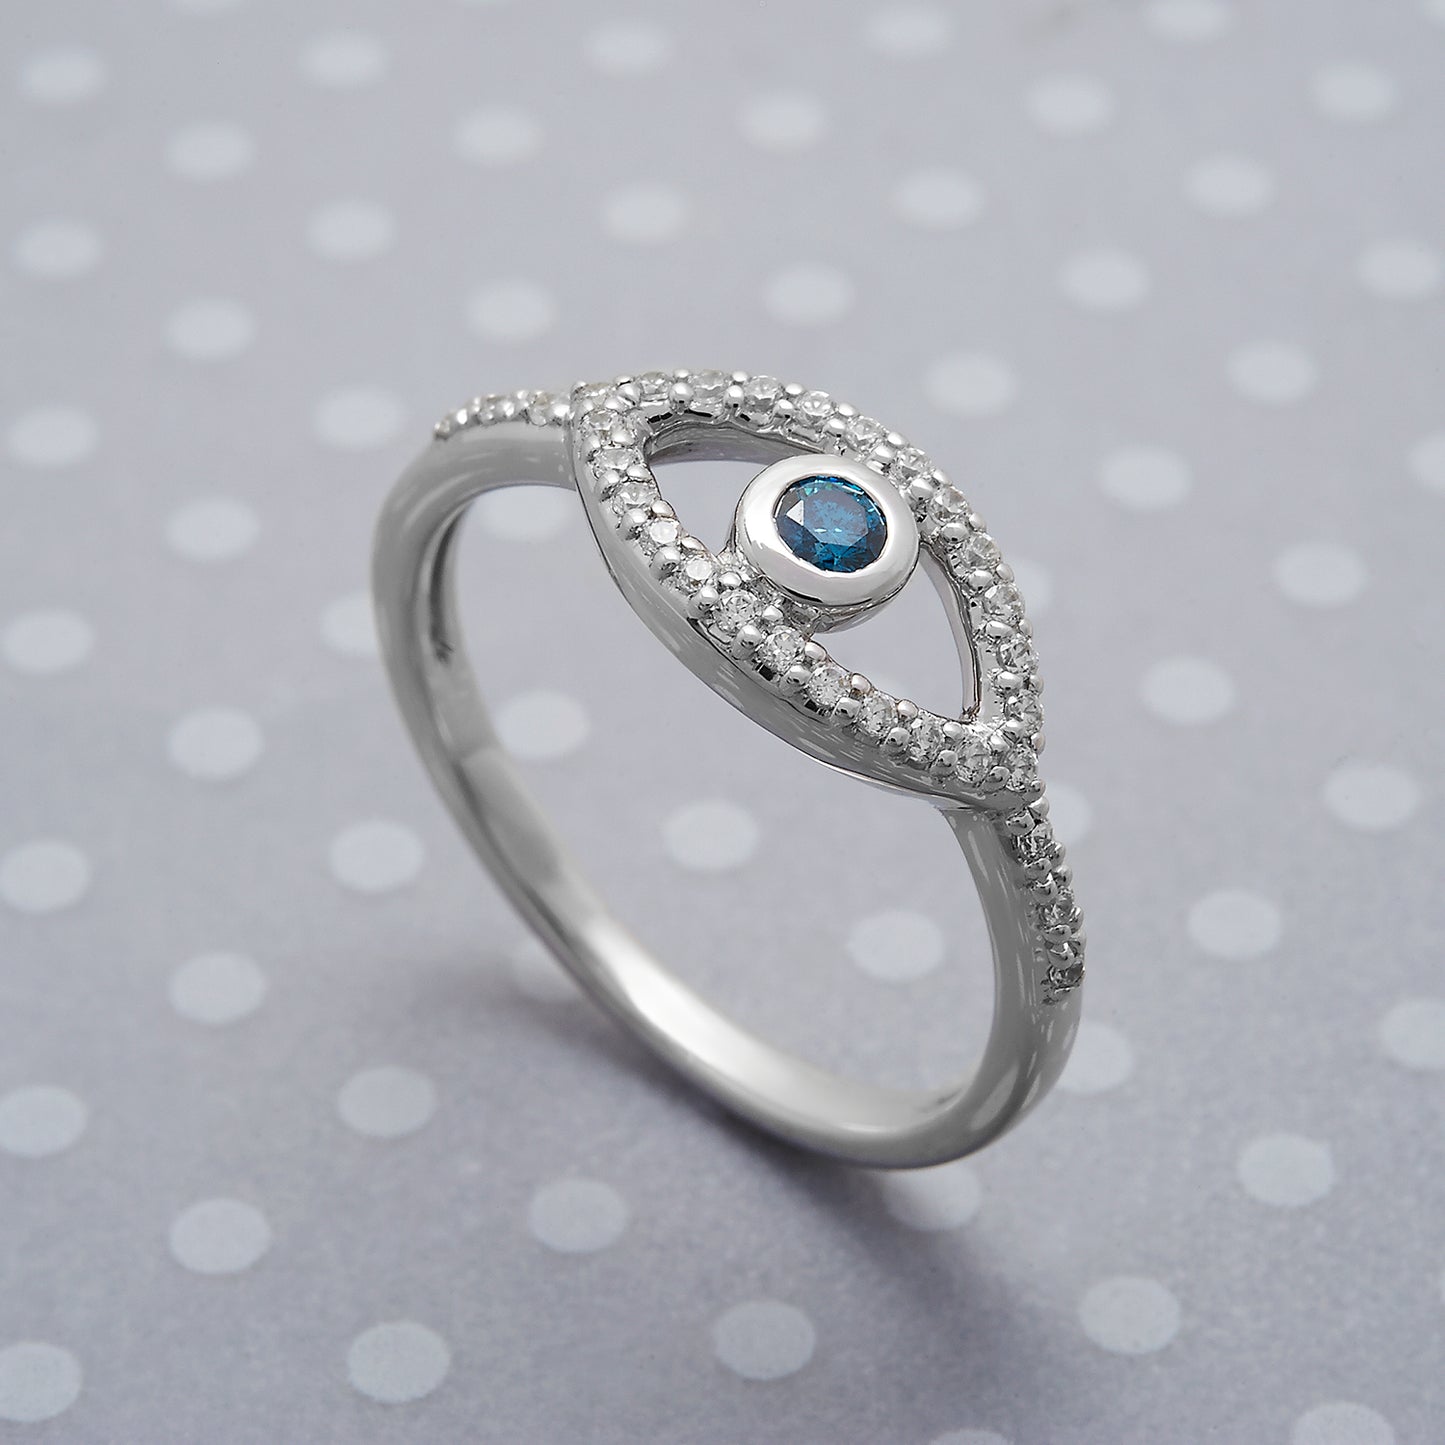 Rubyn Diamond Evil Eye Ring in White Gold for Hand